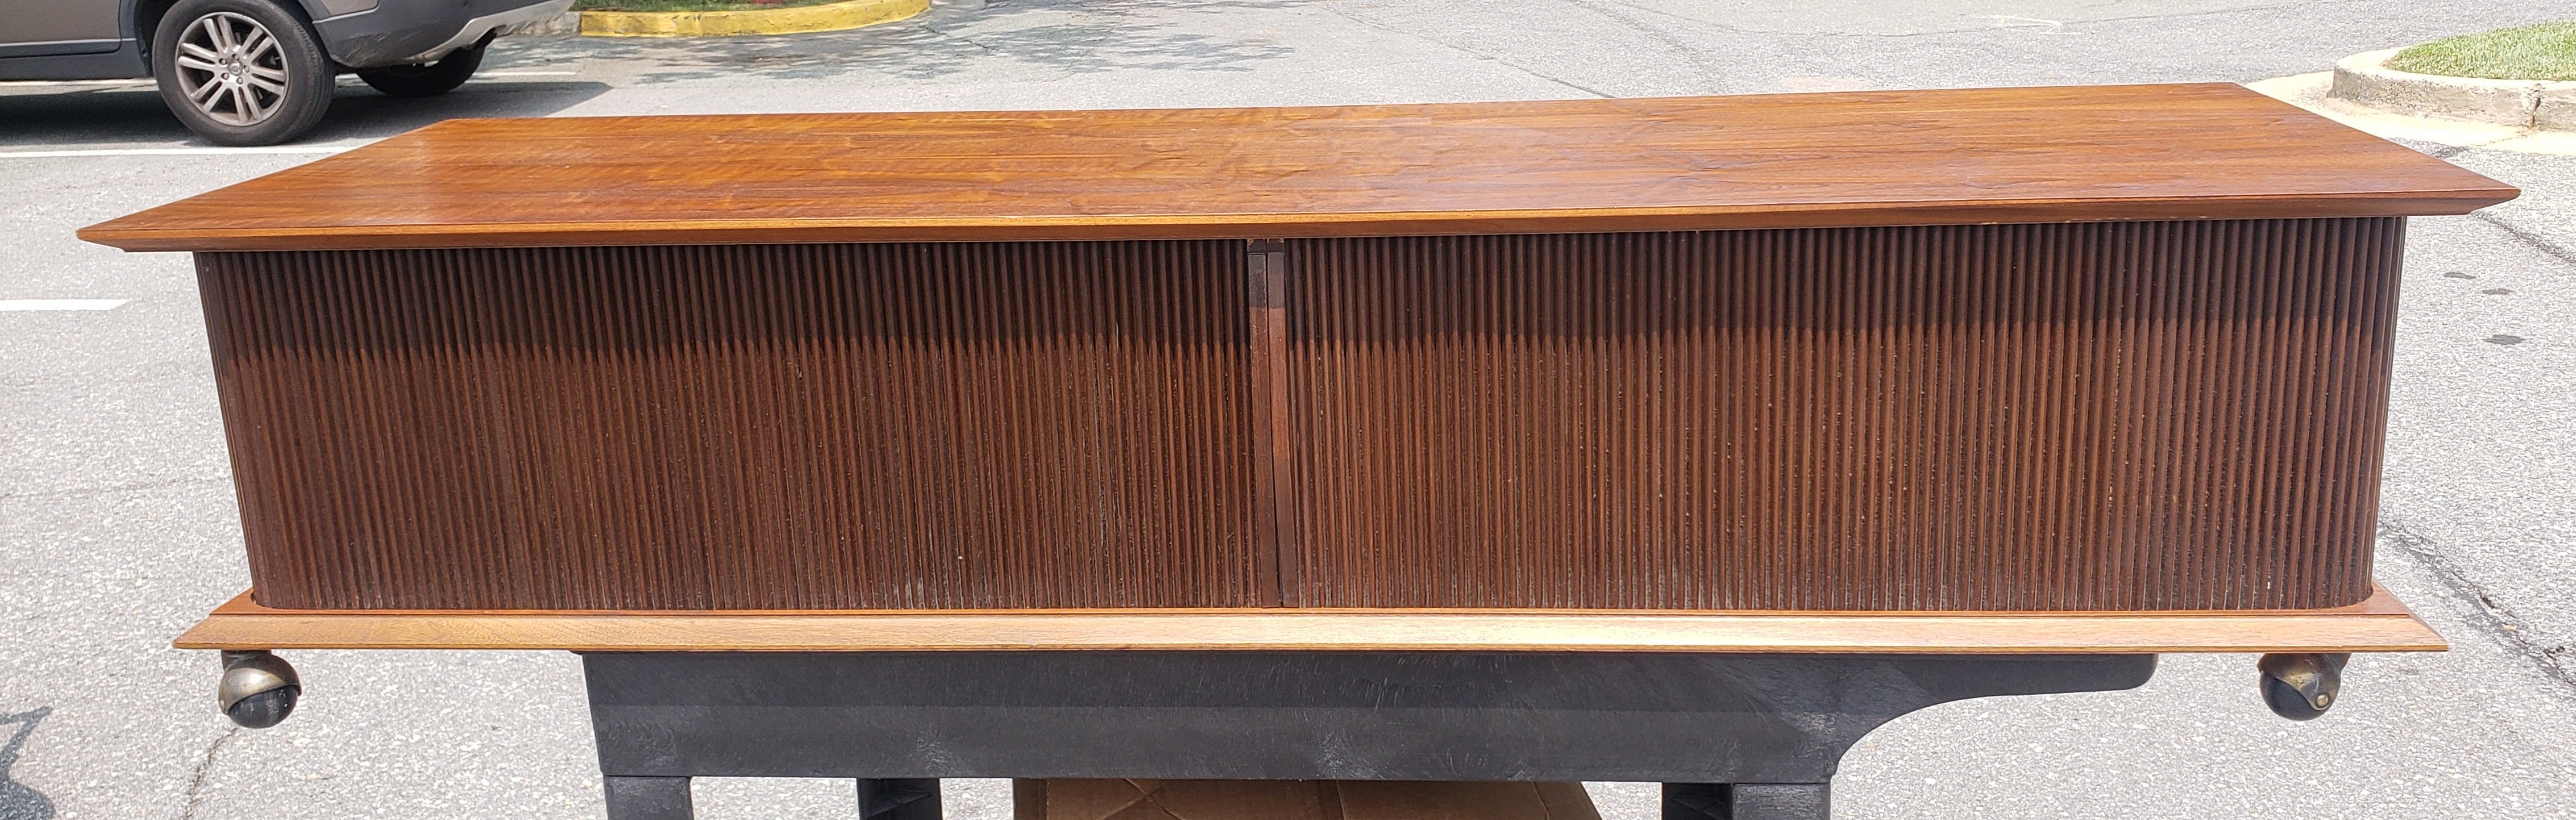 Eine seltene Lane Mid-Century Modern Style Teak und Tambour Tür Basis Rolling Coffee Table in großen Vintage-Zustand. 
Die beiden Schiebetüren lassen sich vollständig schließen, so dass die gegenüberliegende Seite offen bleibt und die Staufächer